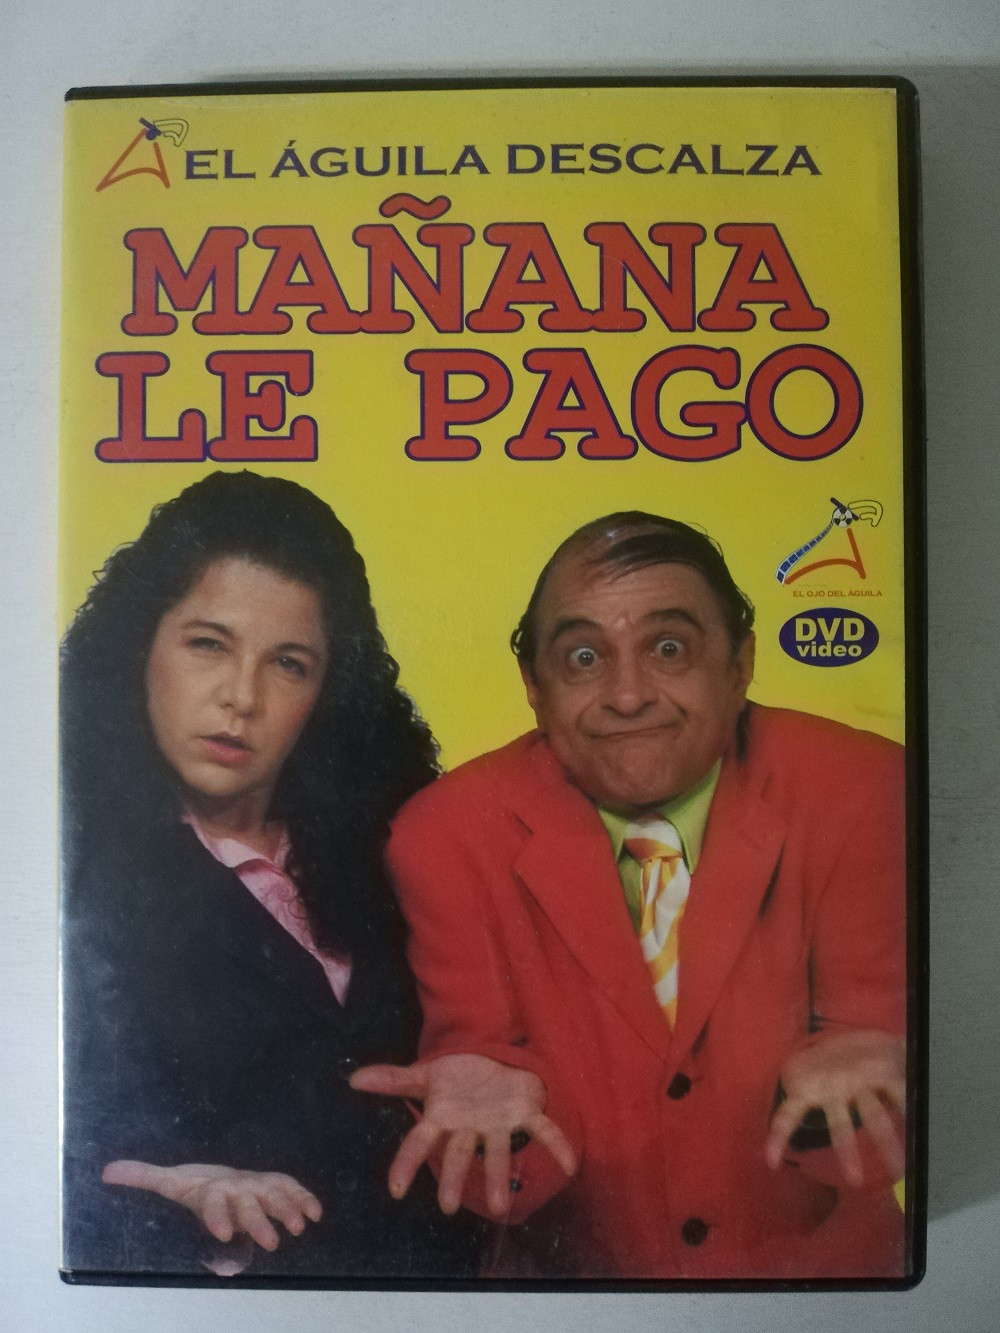 Imagen DVD MAÑANA LE PAGO - EL AGUILA DESCALZA 1